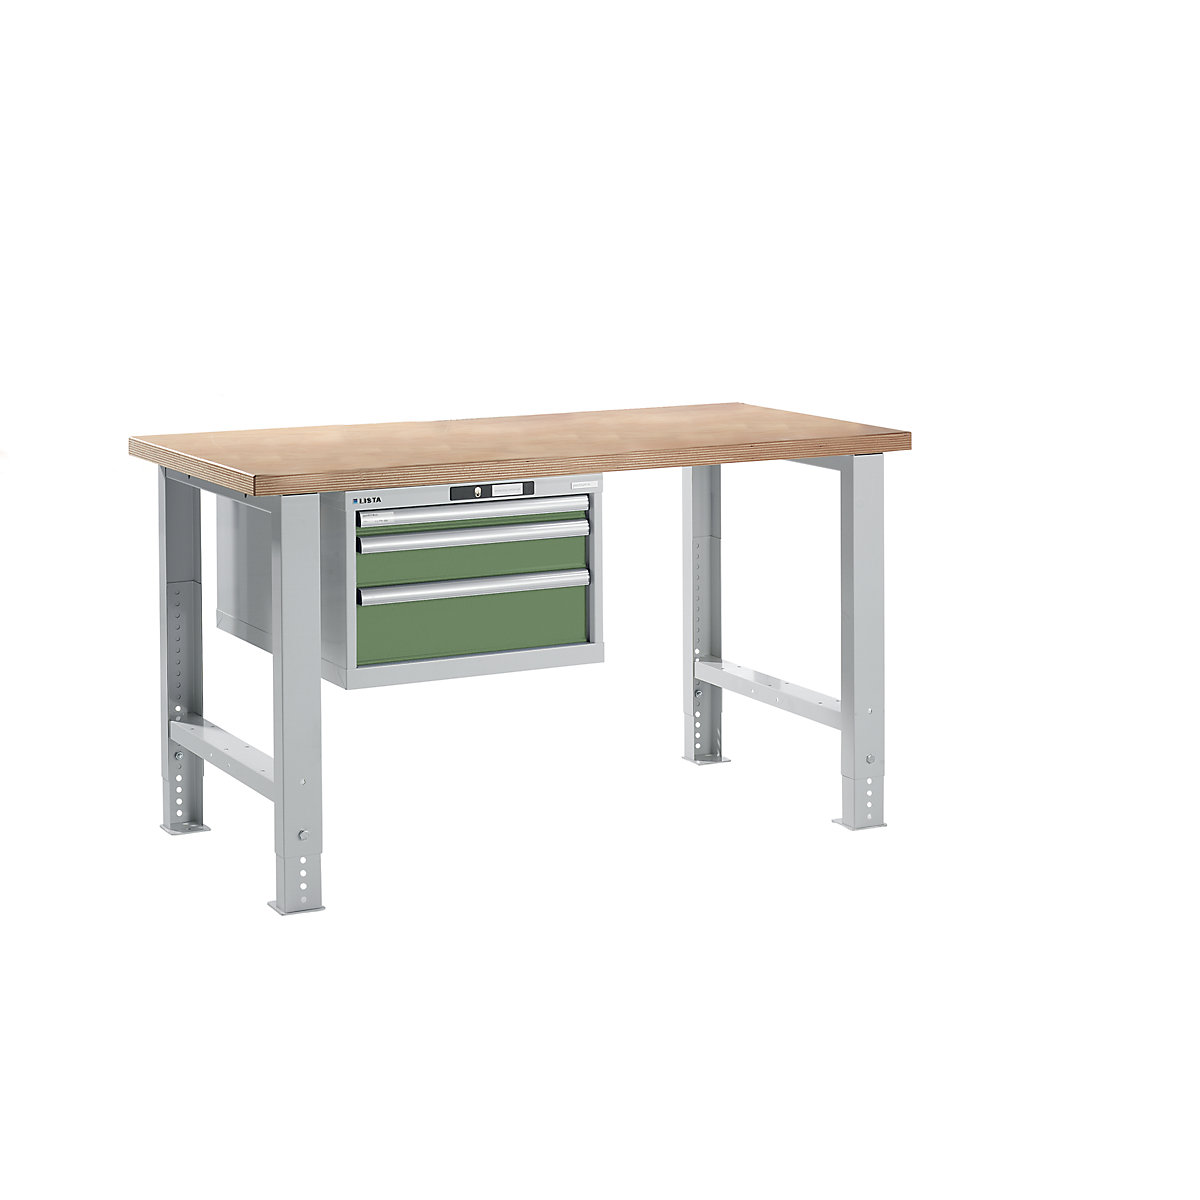 Dílenský stůl ve stavebnicovém systému – LISTA, výška 740 – 1090 mm, závěsná skříň, 3 zásuvky, rezedově zelená, šířka stolu 1500 mm-13